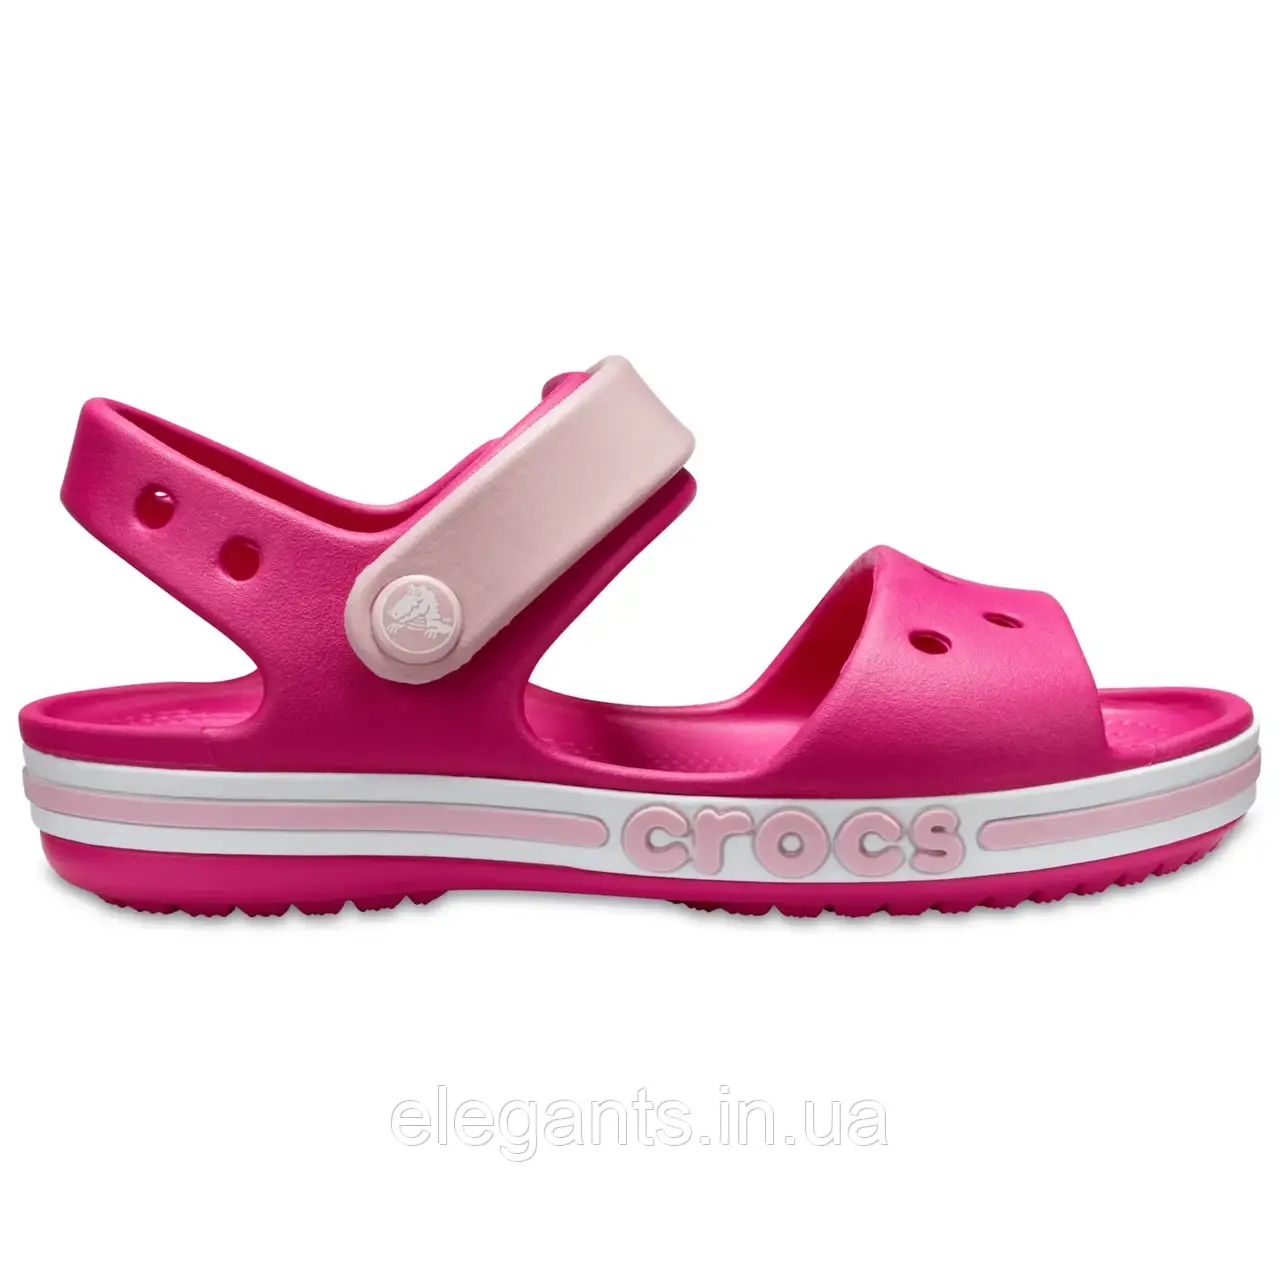 Crocs Kids 'Bayaband Sandal Candy Pink Дитячі Сандалії Крокс Боябенд Кідс Конфетно-рожевий